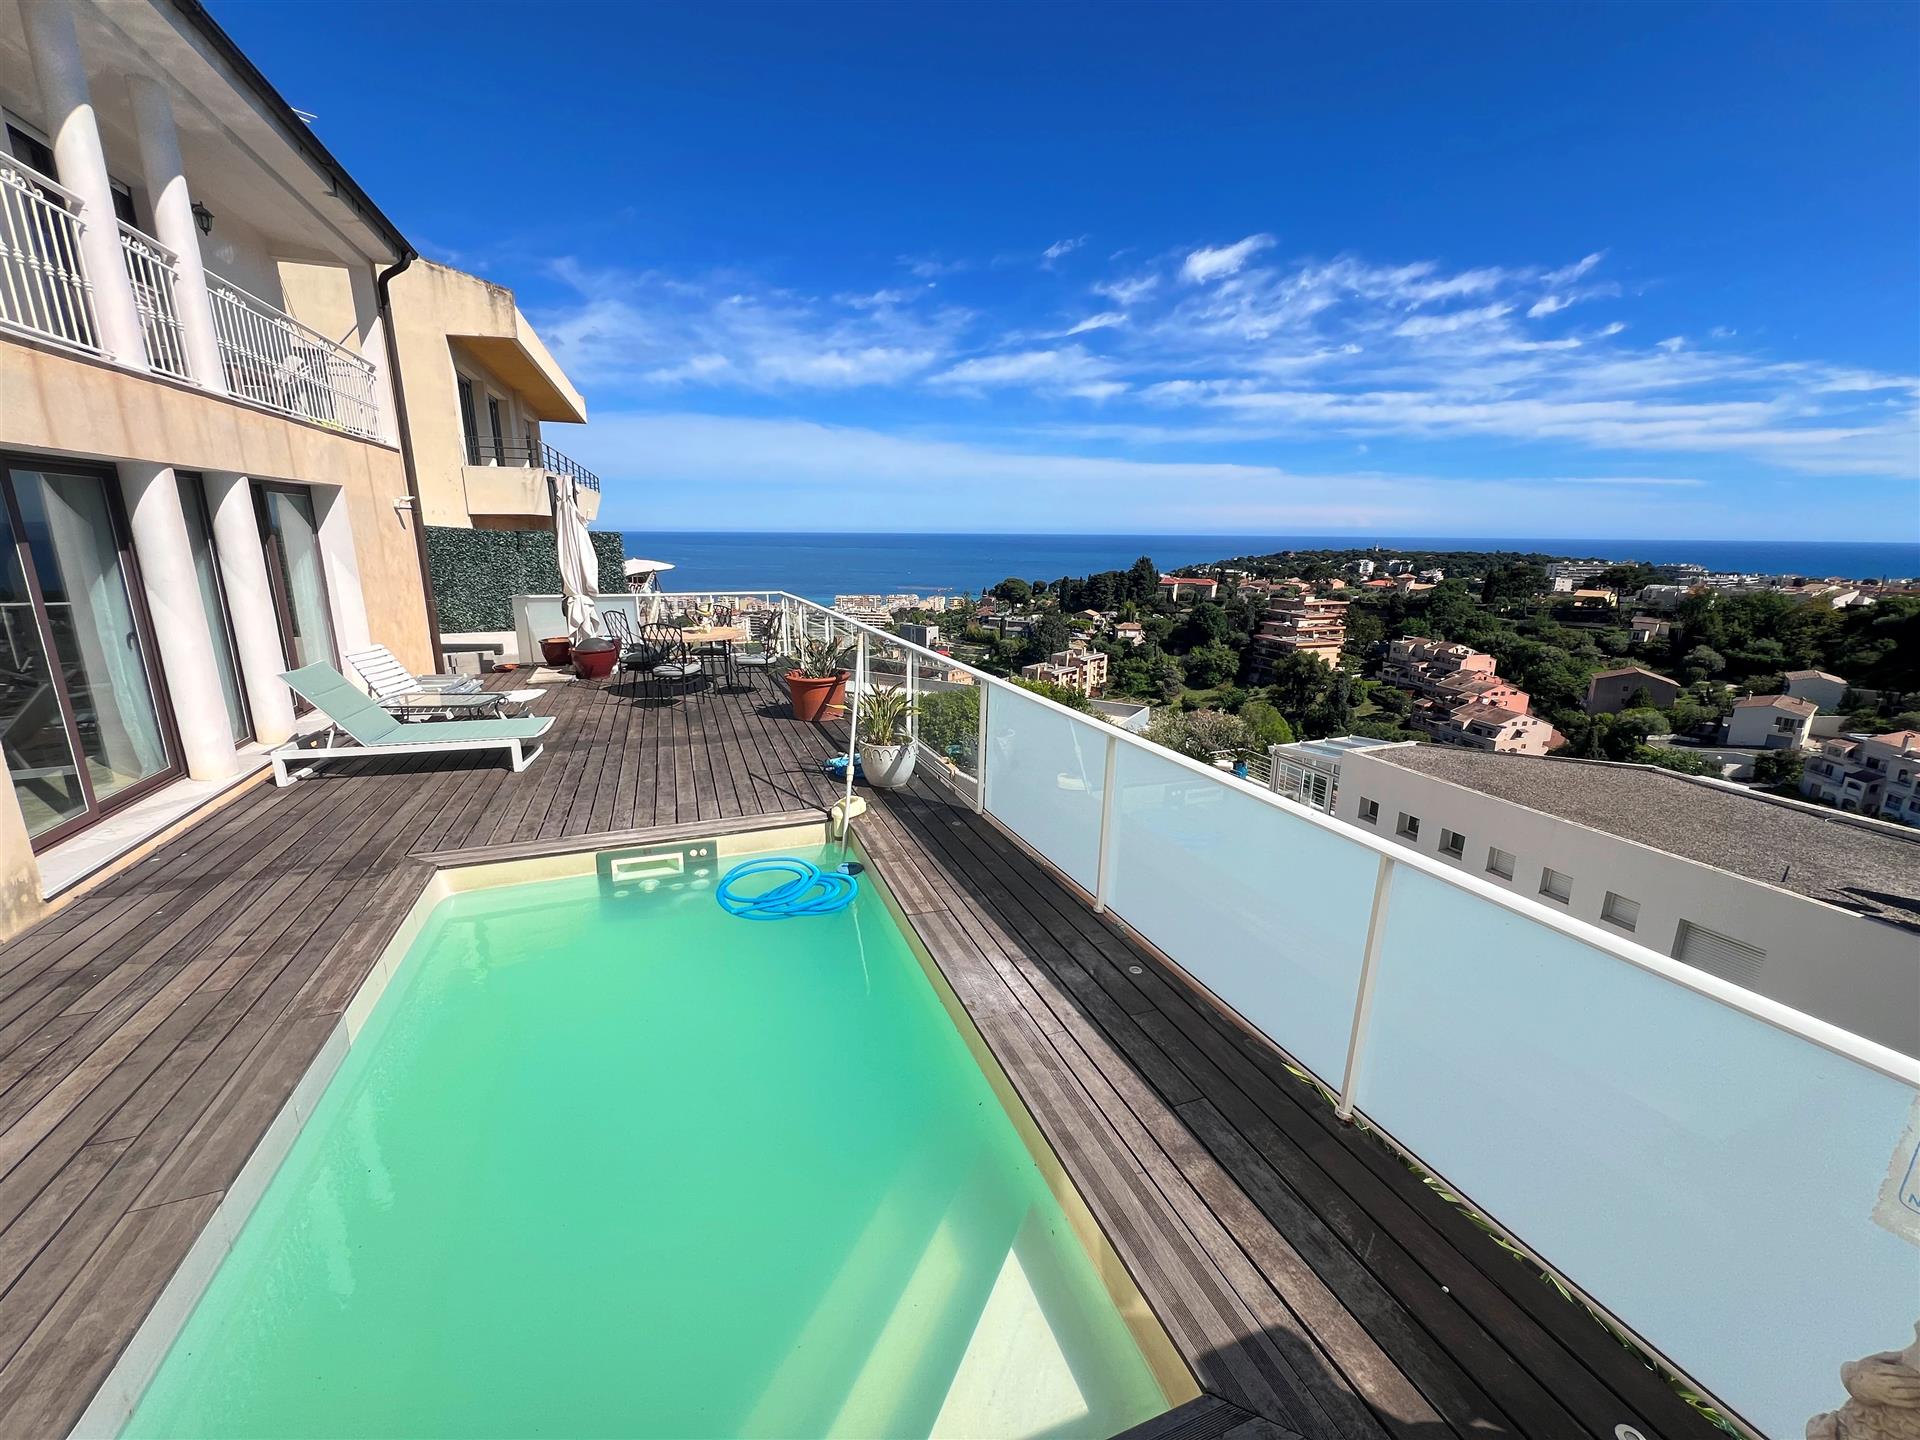 Panoramablick auf das Meer, Villa in der Nähe von Monaco